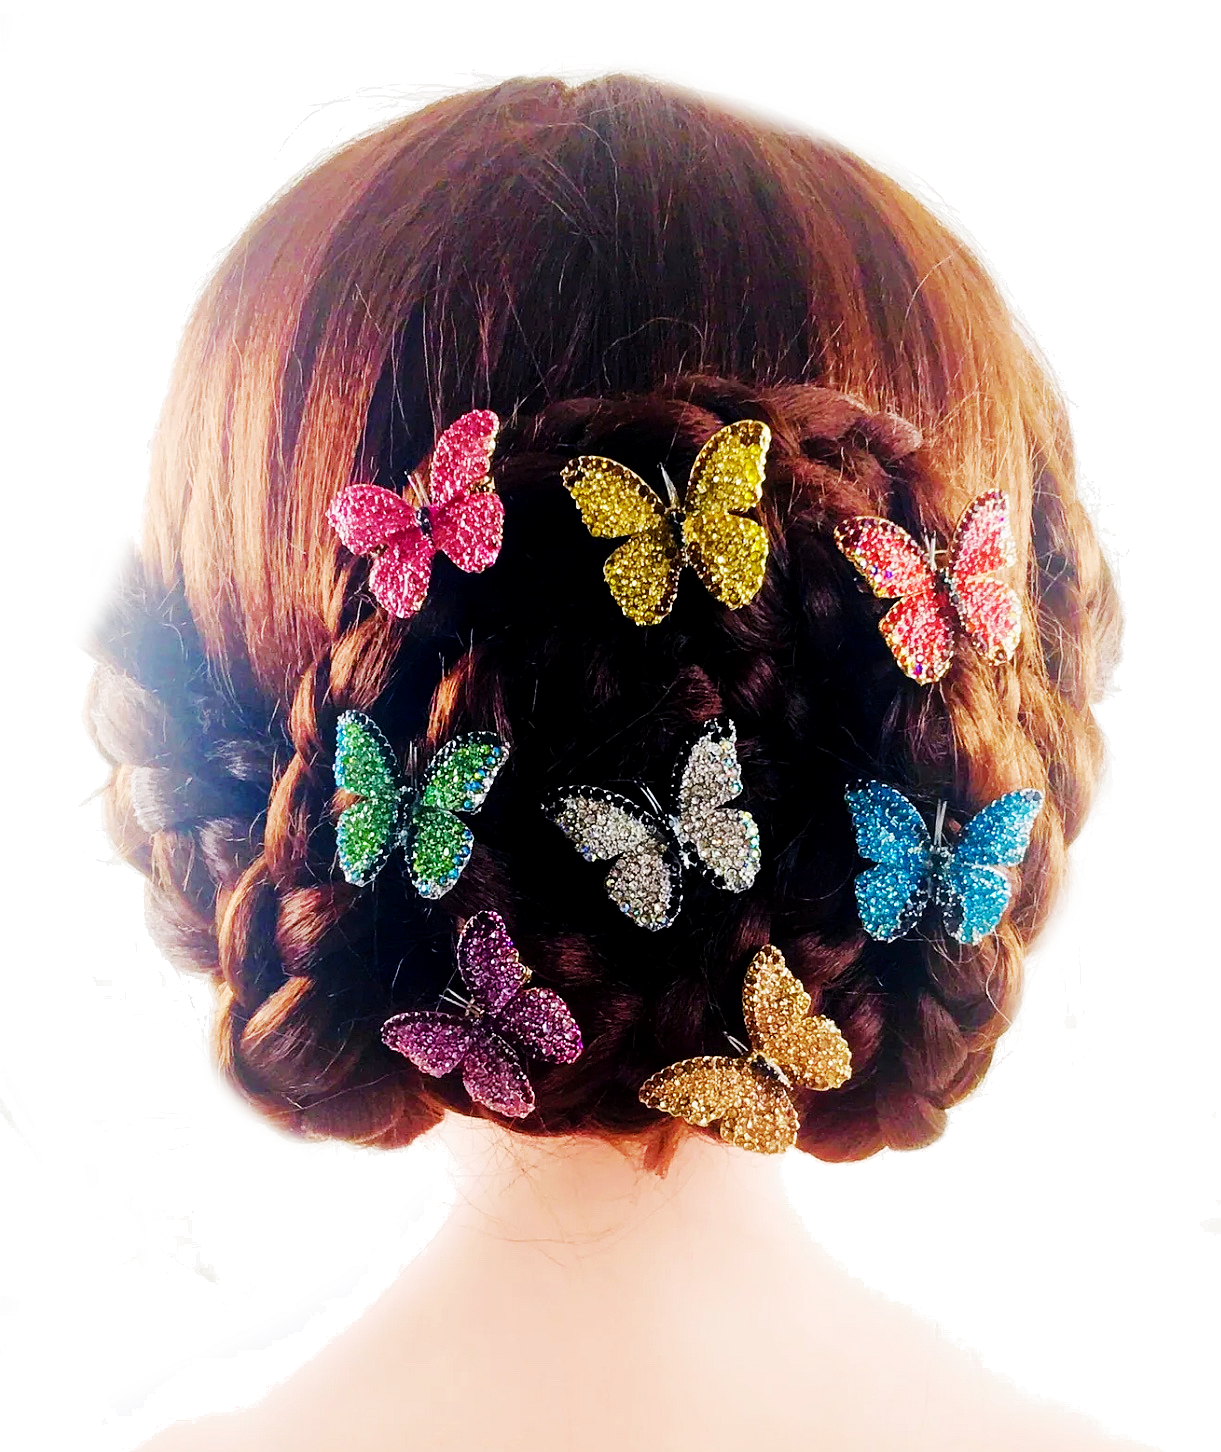 Lucinda Butterfly Hair Clip use Swarovski Elementary Crystal, Hair Clip - MOGHANT